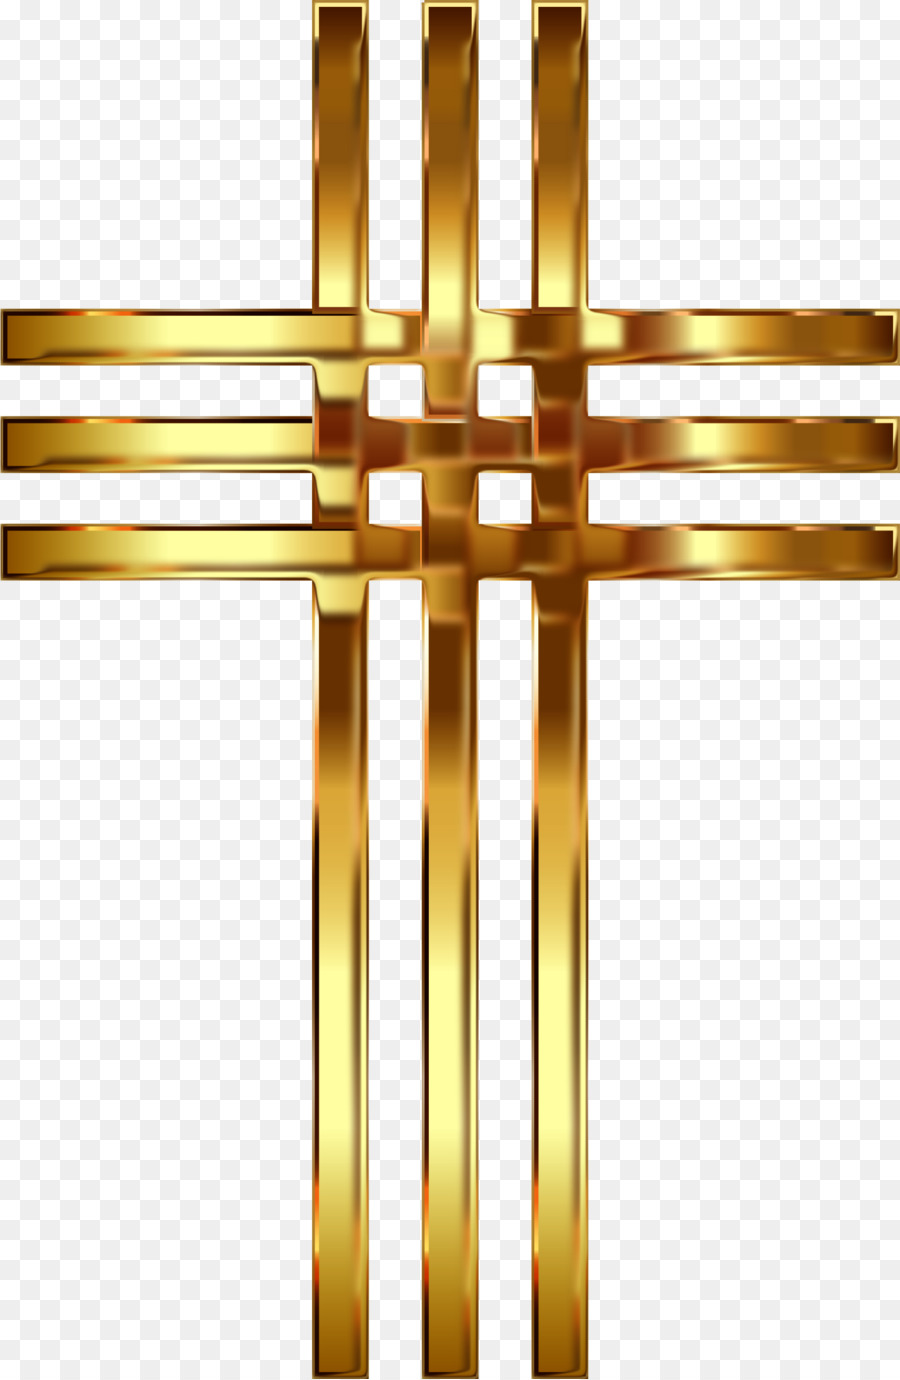 Christian cross Church Clip art - cross png download - 1448*2218 - Free Transparent Christian Cross png Download.